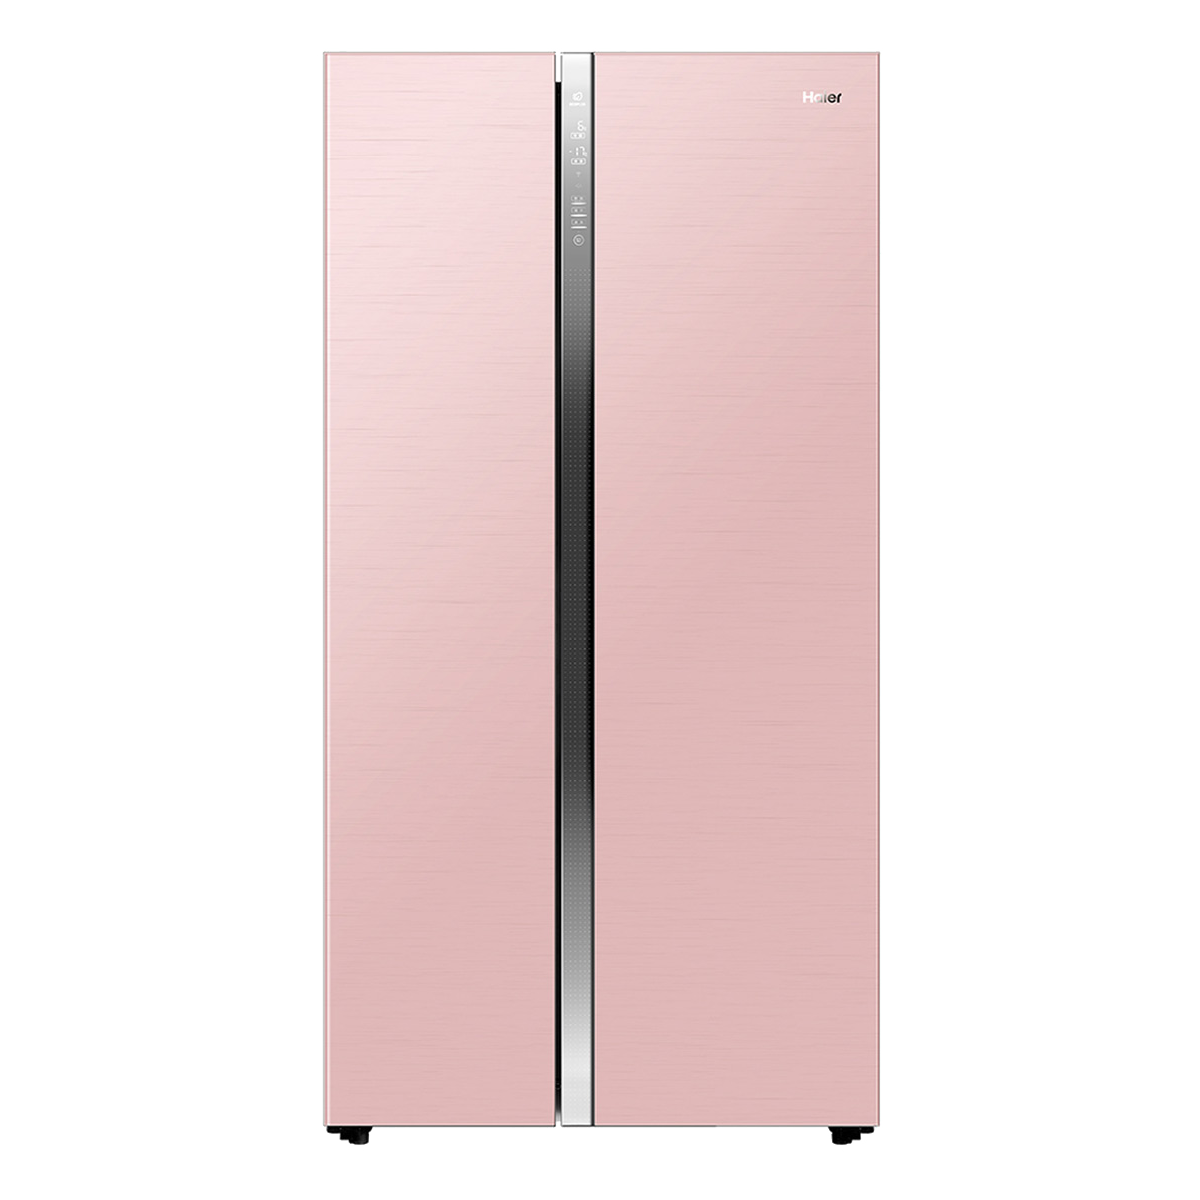 海尔Haier冰箱 BCD-625WDGEU1 说明书